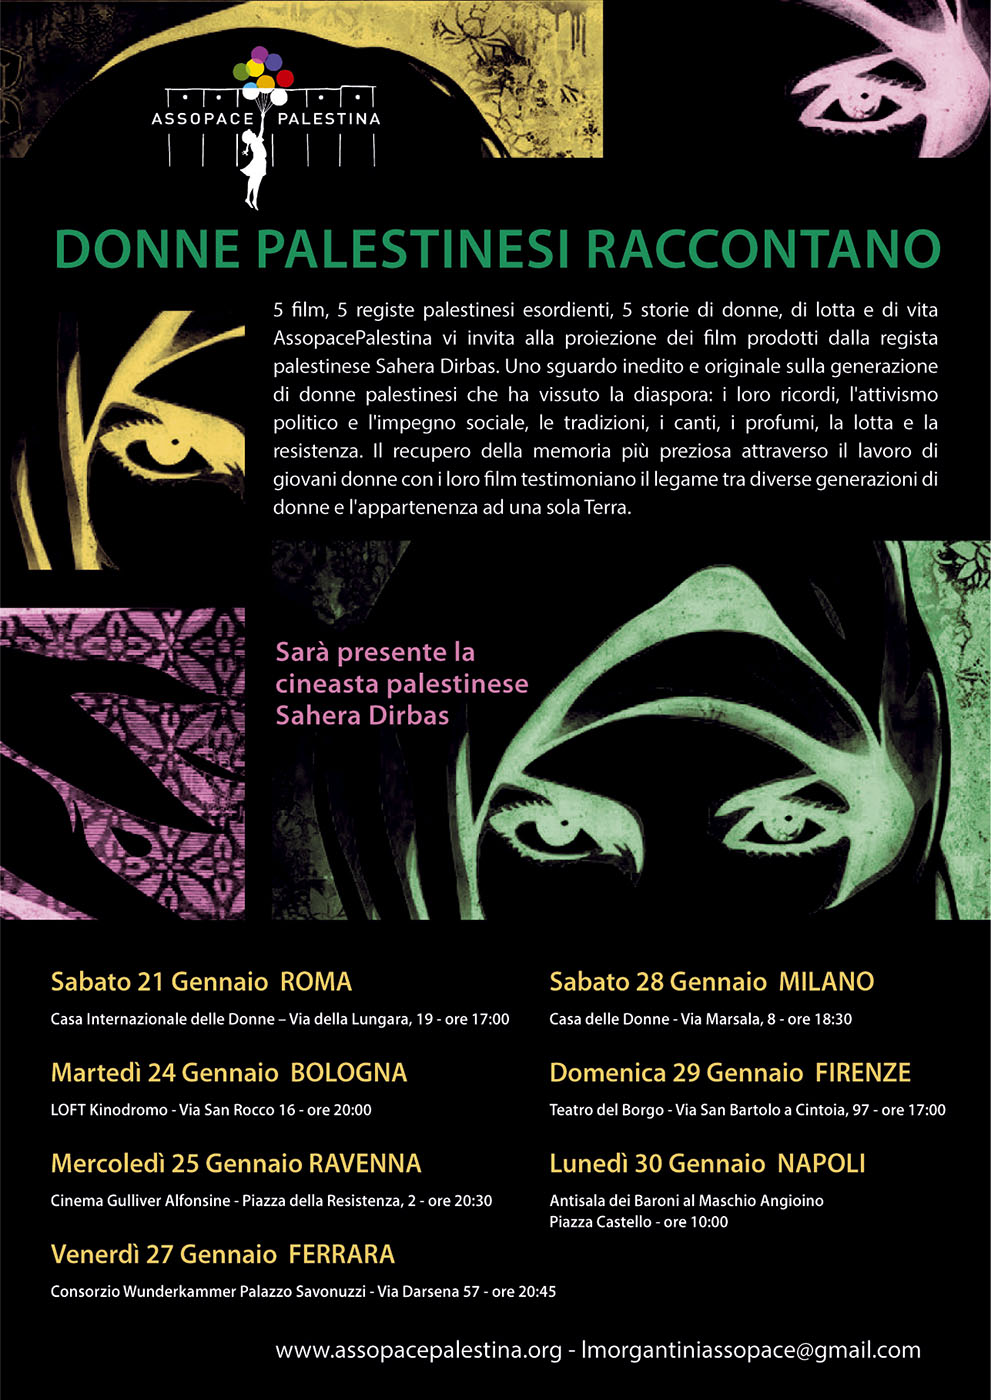 Bologna, Ravenna, Ferrara, Milano, Firenze, Napoli: Rassegna di film palestinesi